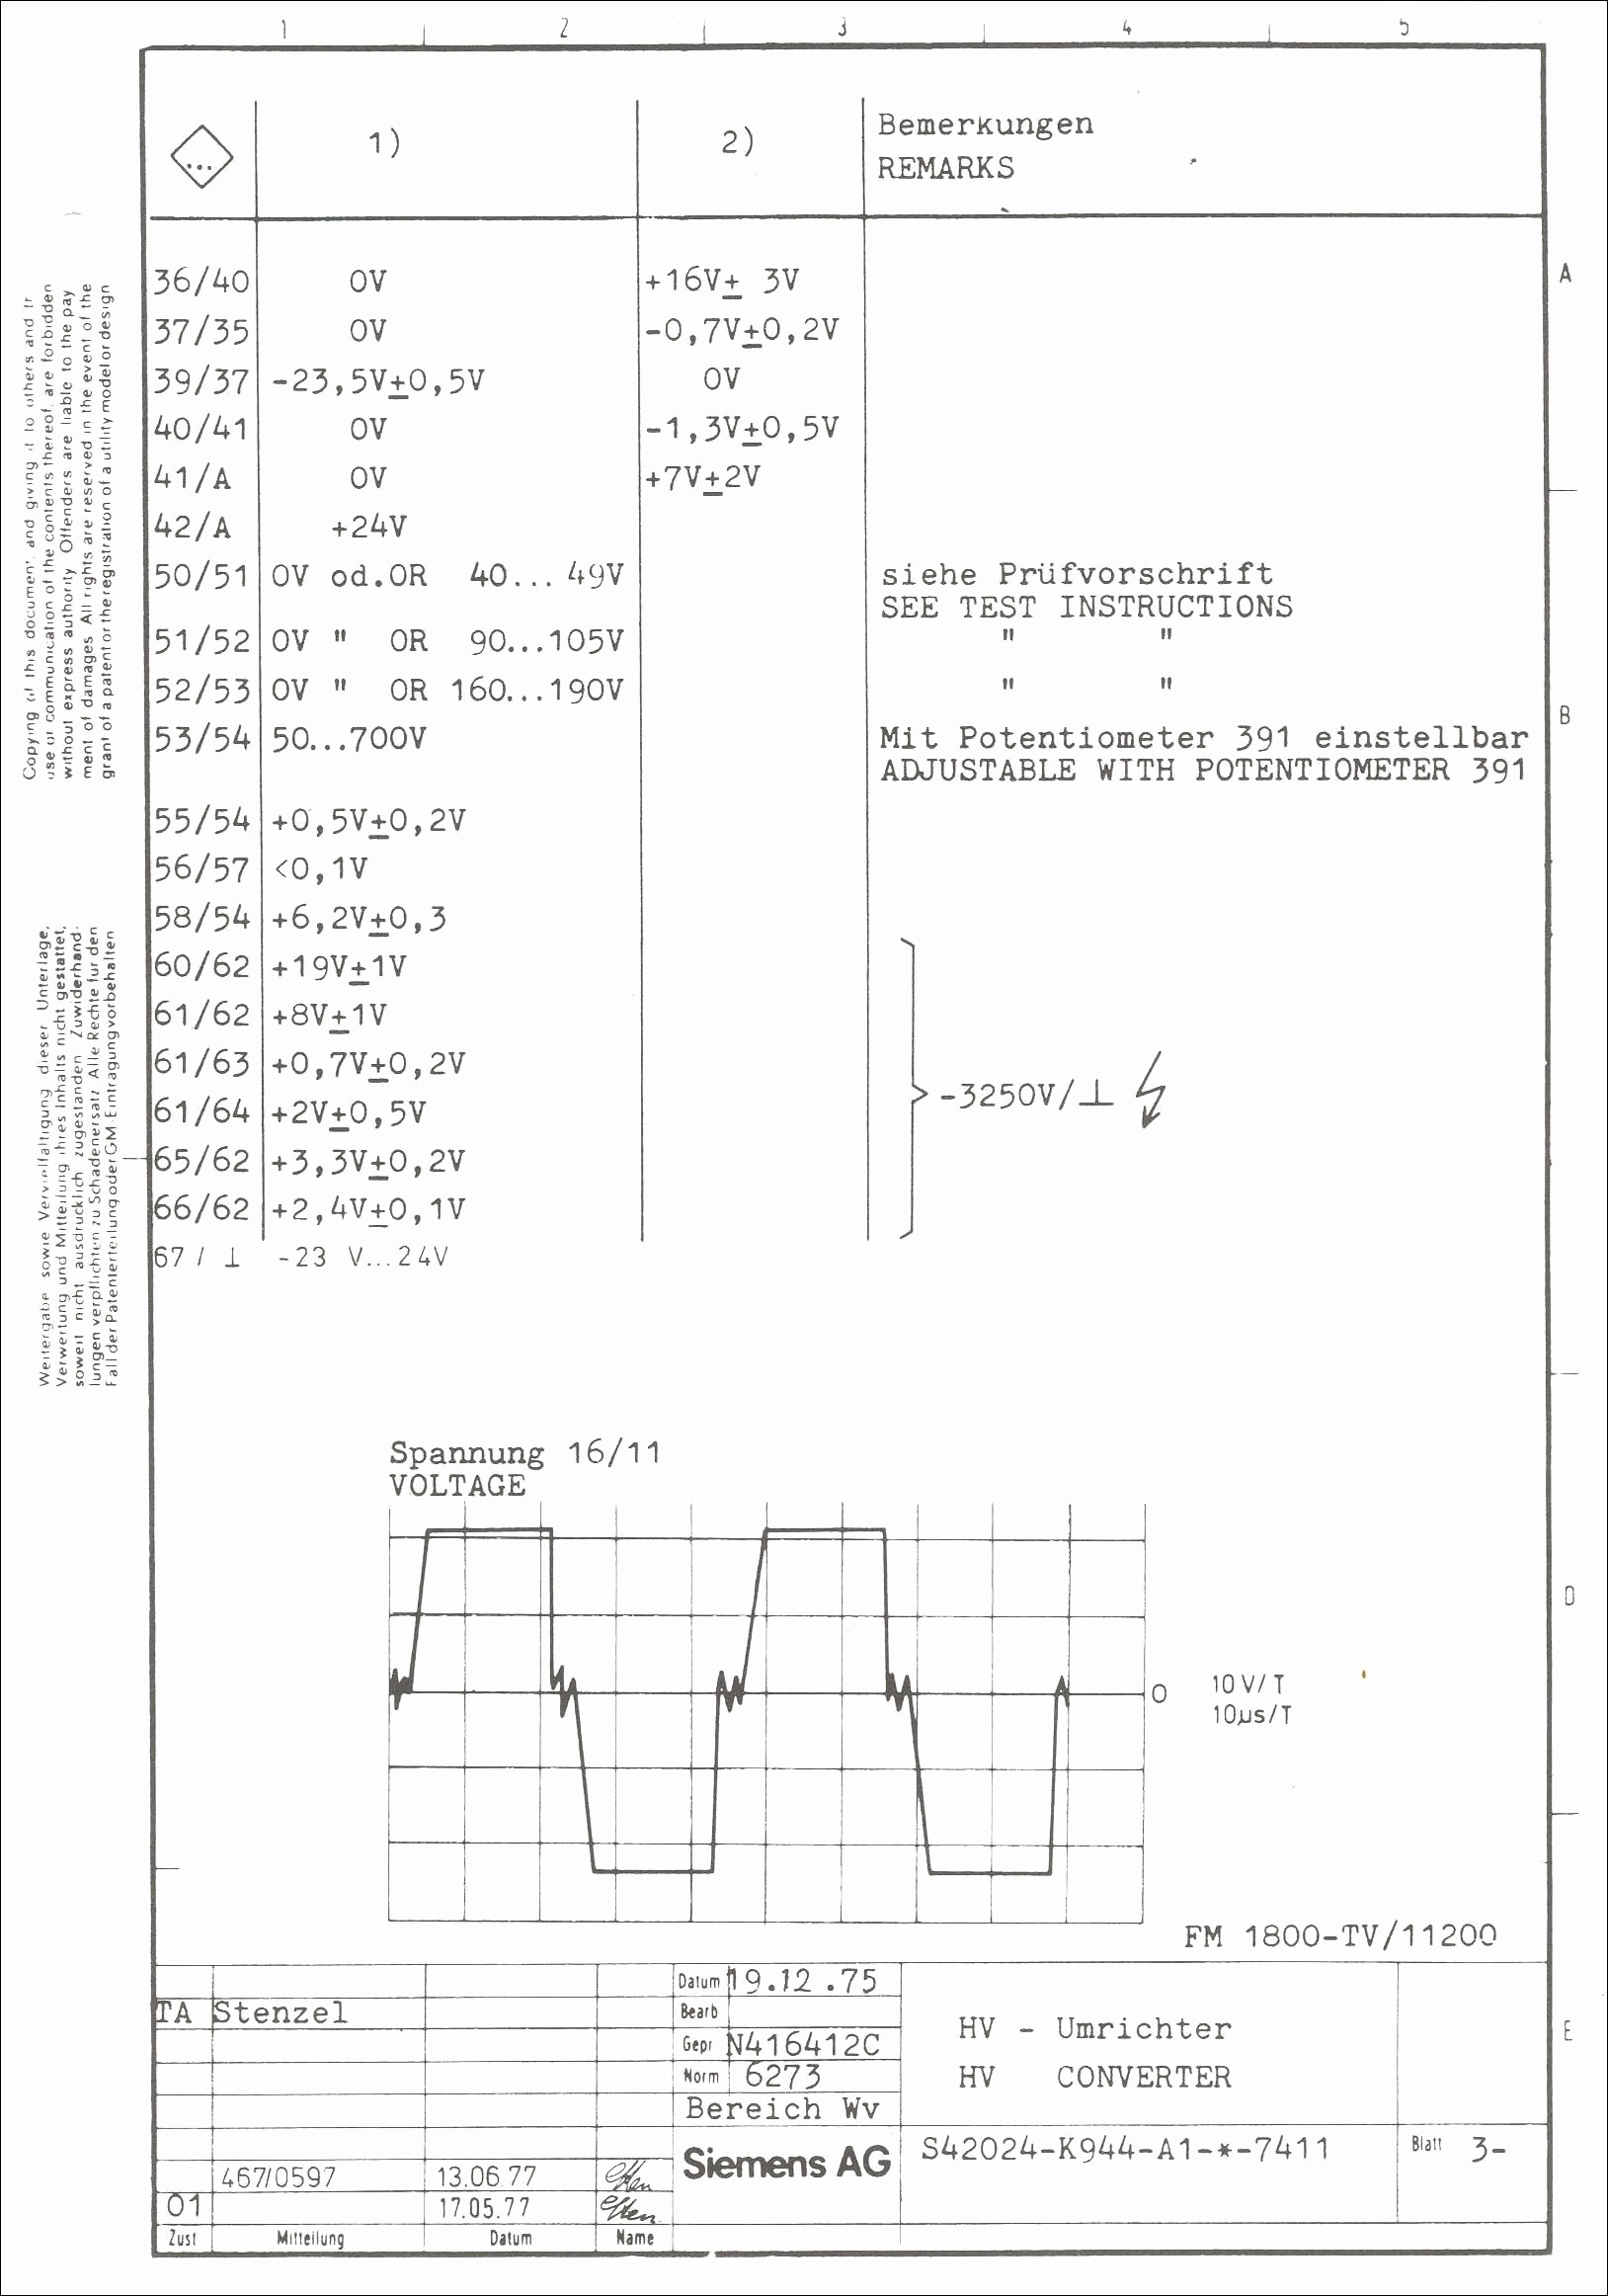 Sony Car Audio Wiring Diagram sony Xplod Car Stereo Wiring Diagram Wiring Schematics Diagram Of Sony Car Audio Wiring Diagram